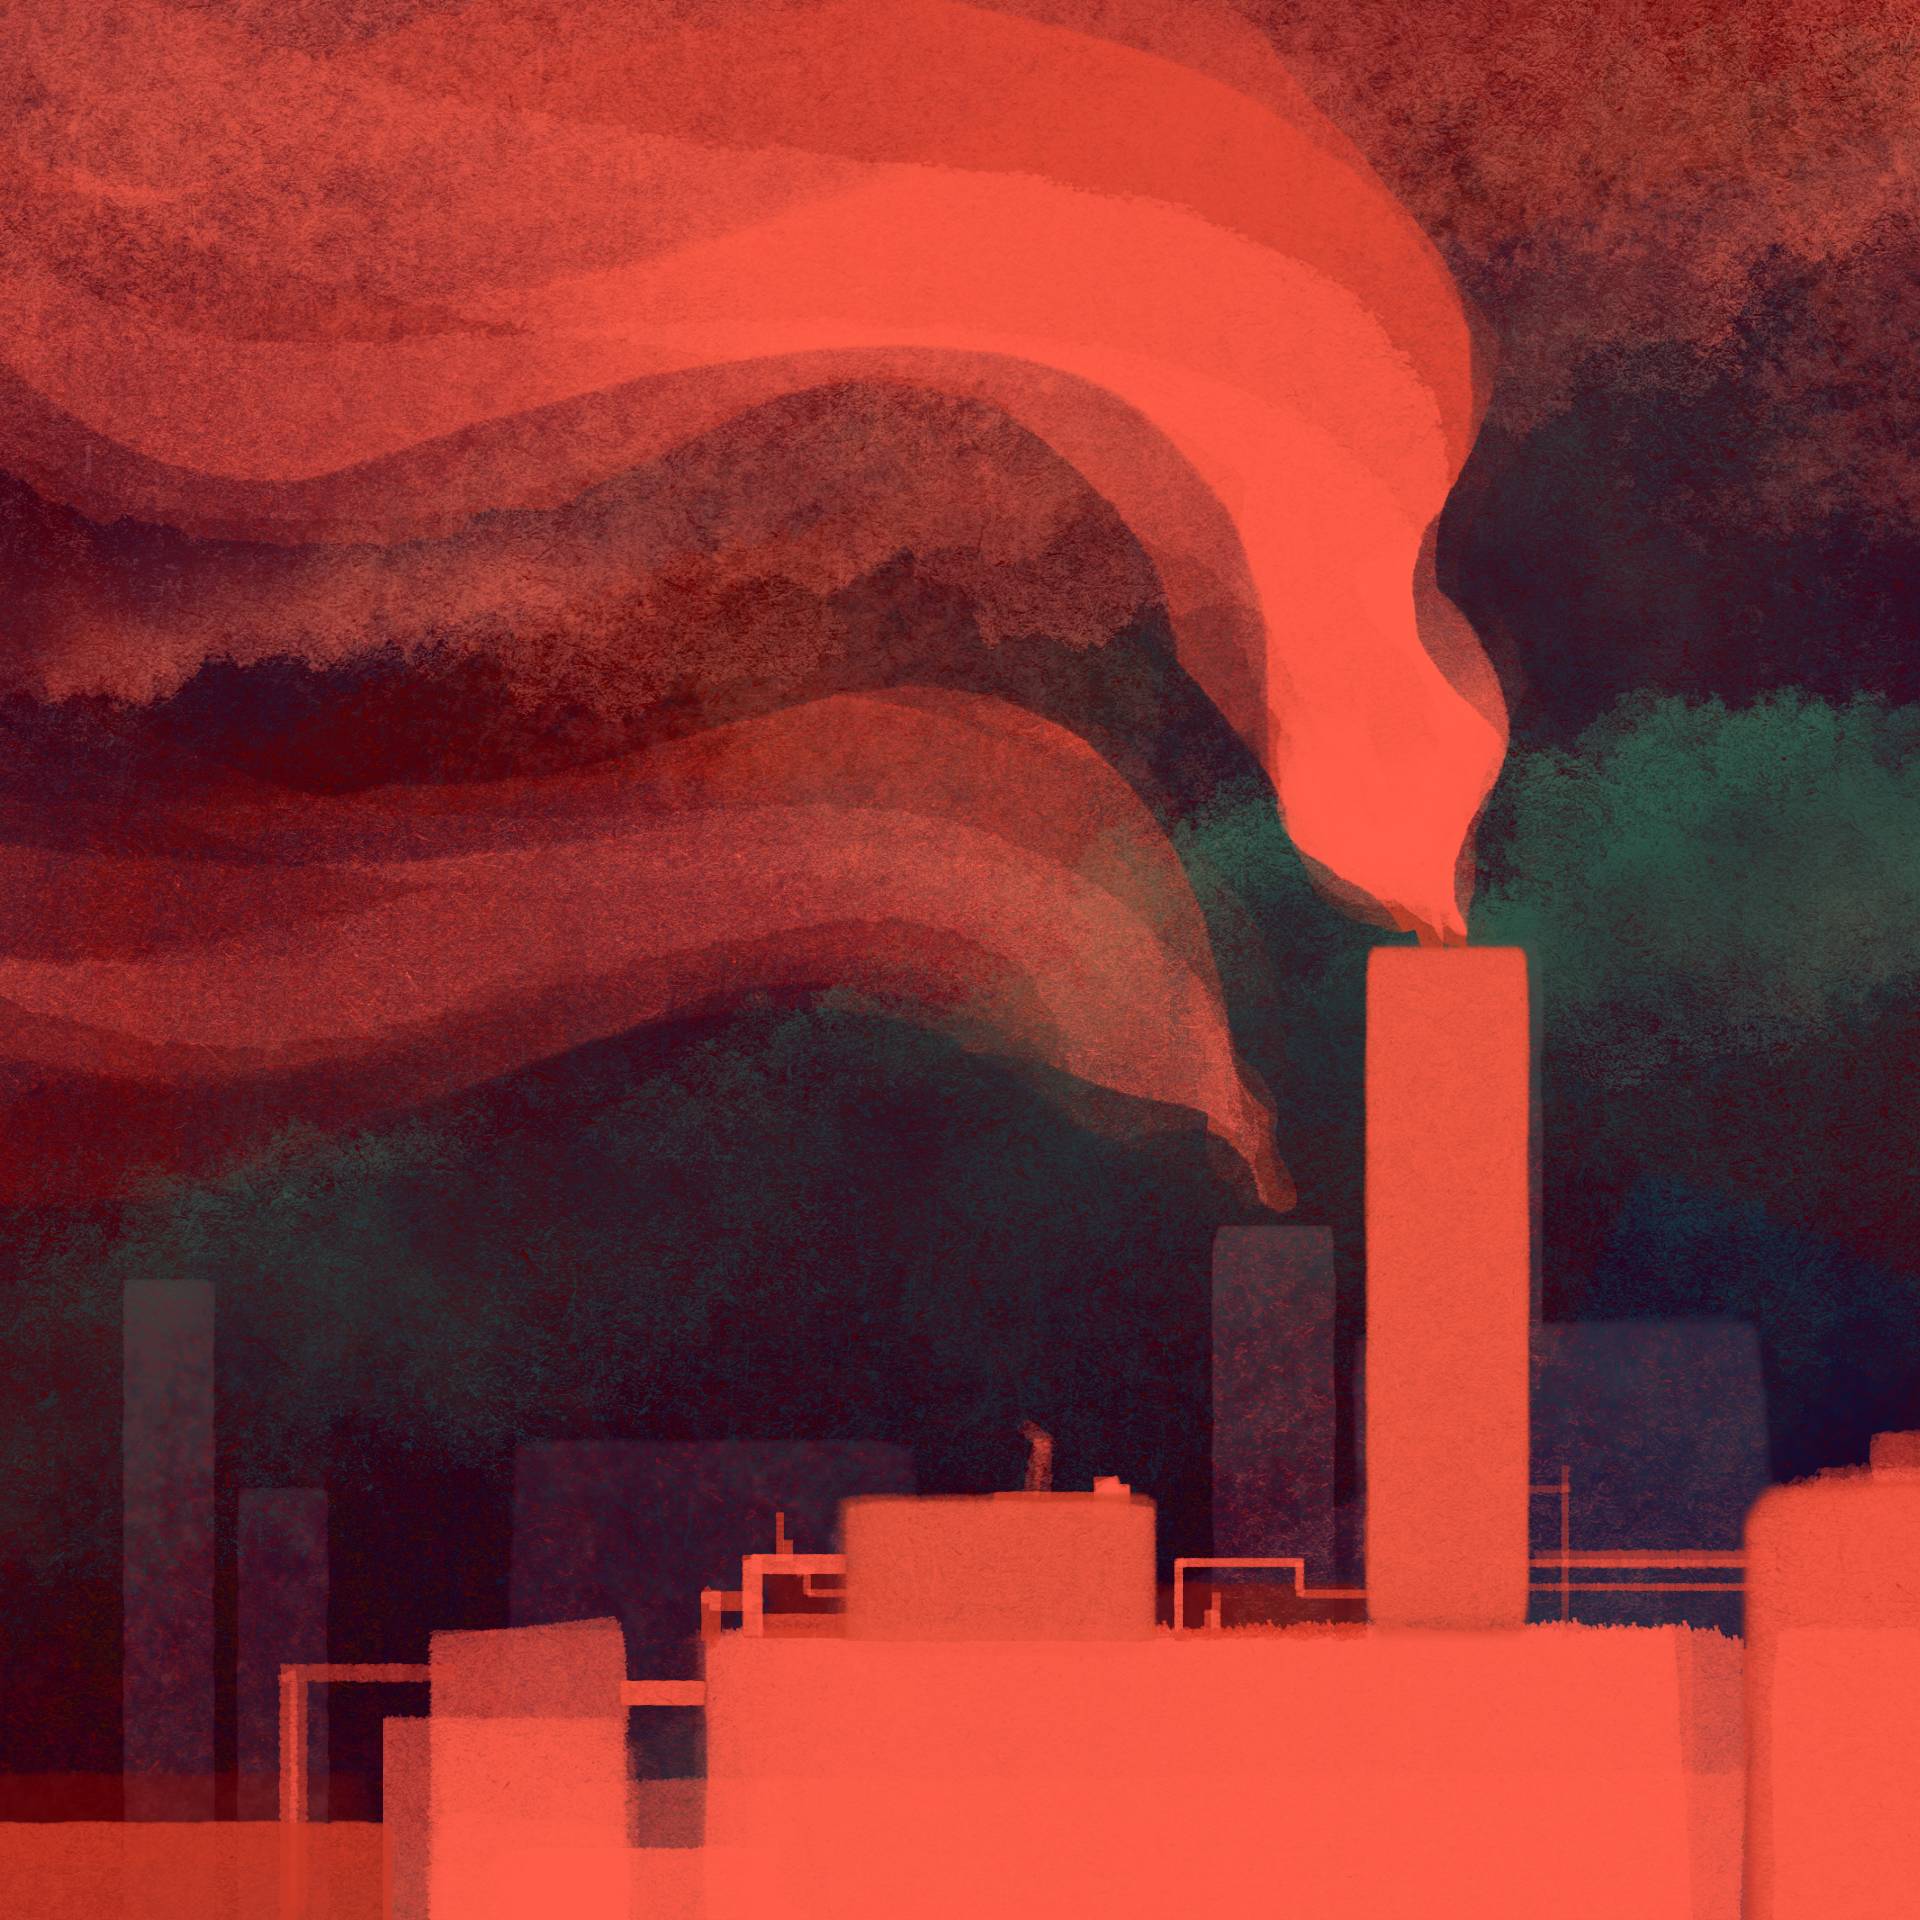 Rysunek przedstawia zarys dymiących kominów fabrycznych